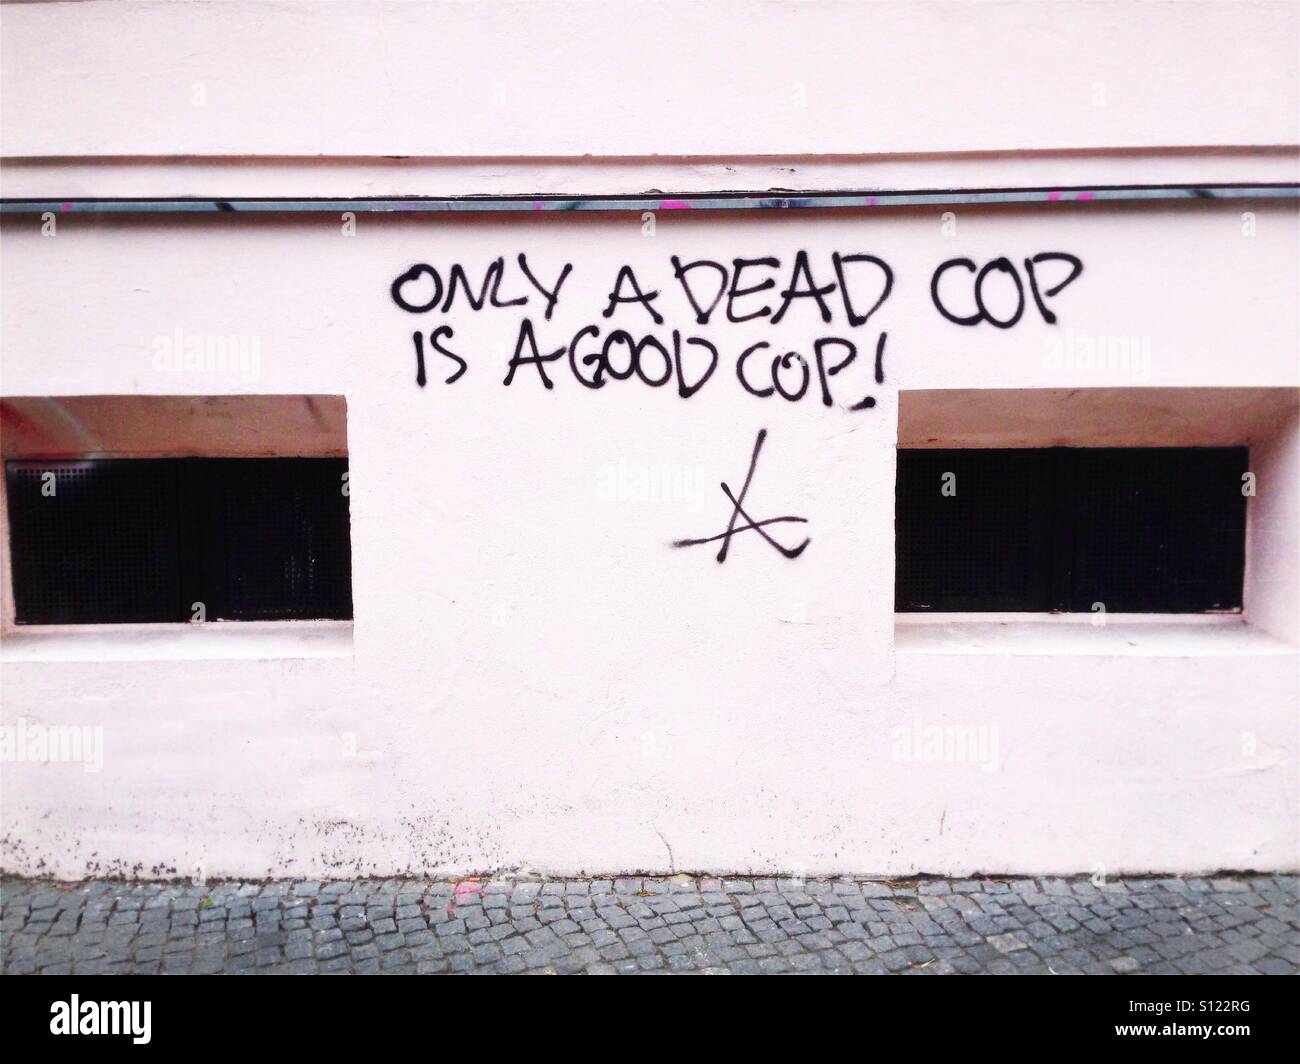 Seul un dead cop est un bon cop : graffiti sur un mur dans le quartier Kreuzberg de Berlin, Allemagne Banque D'Images